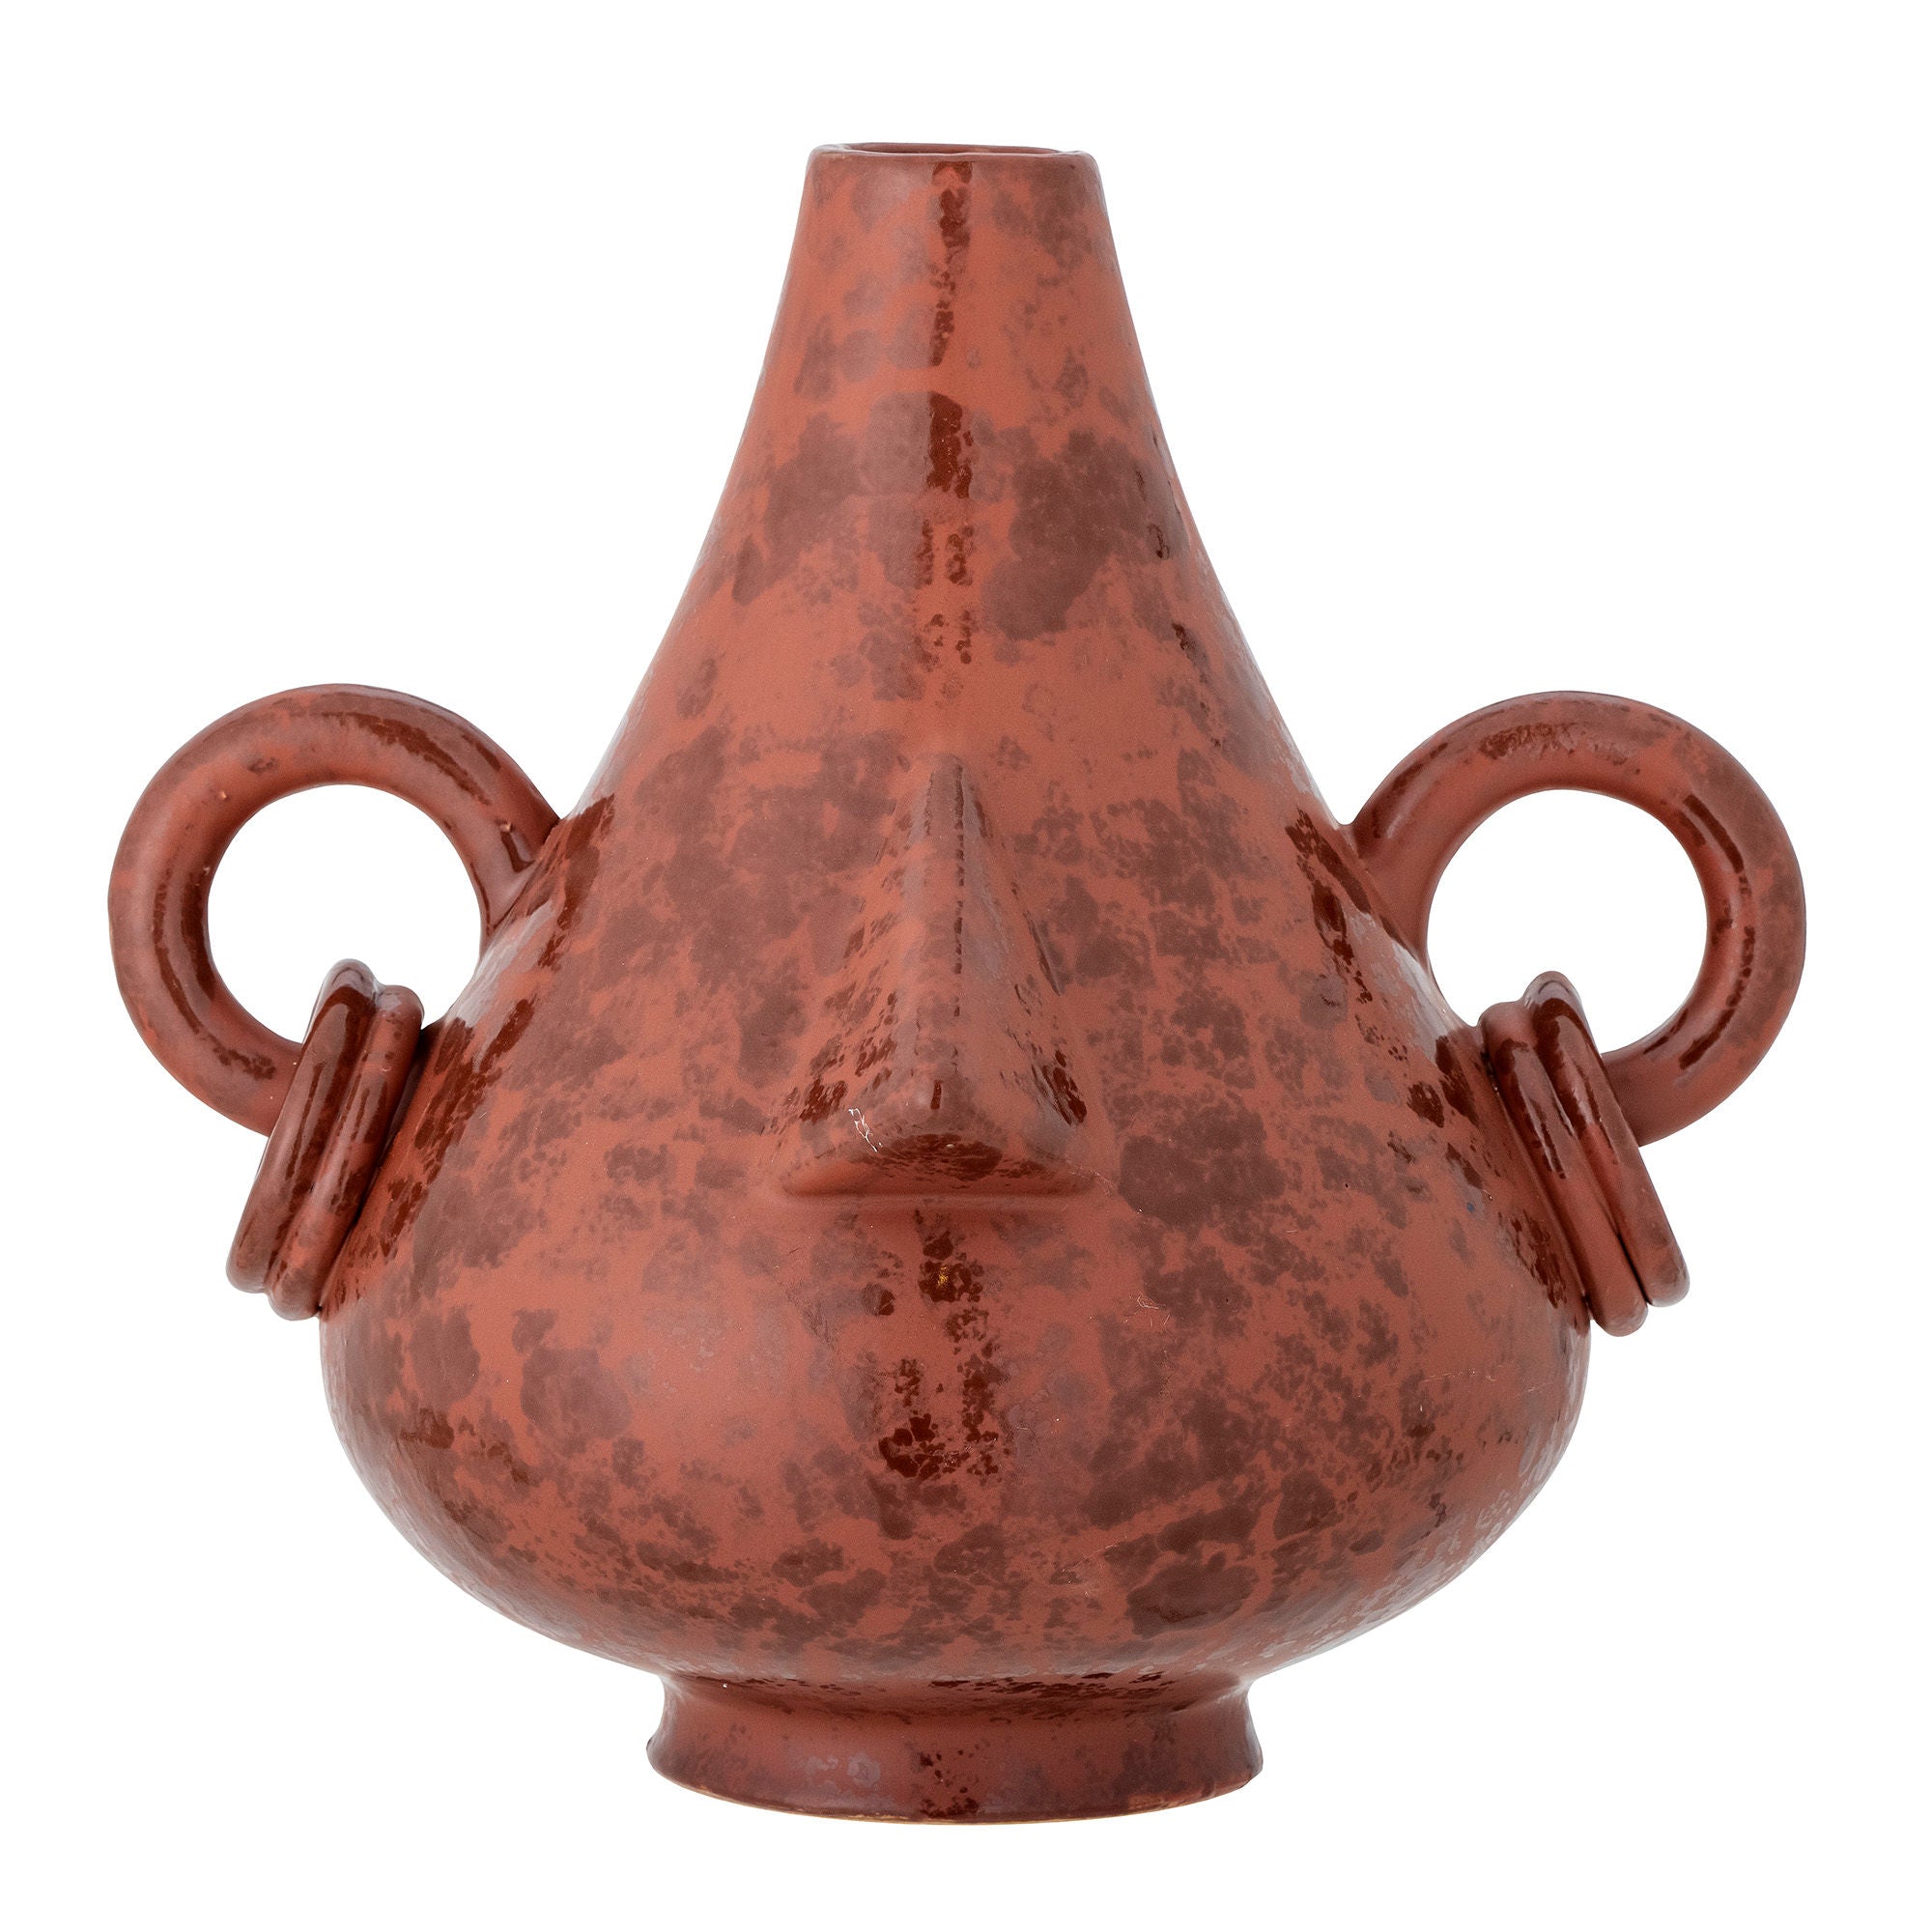 Die "Tarun" Deko-Vase aus braunem Steingut mit reaktiver Glasur in warmen Farben verleiht jedem Raum Persönlichkeit und eine gemütliche Stimmung, perfekt für getrocknete Blumen oder Zweige.